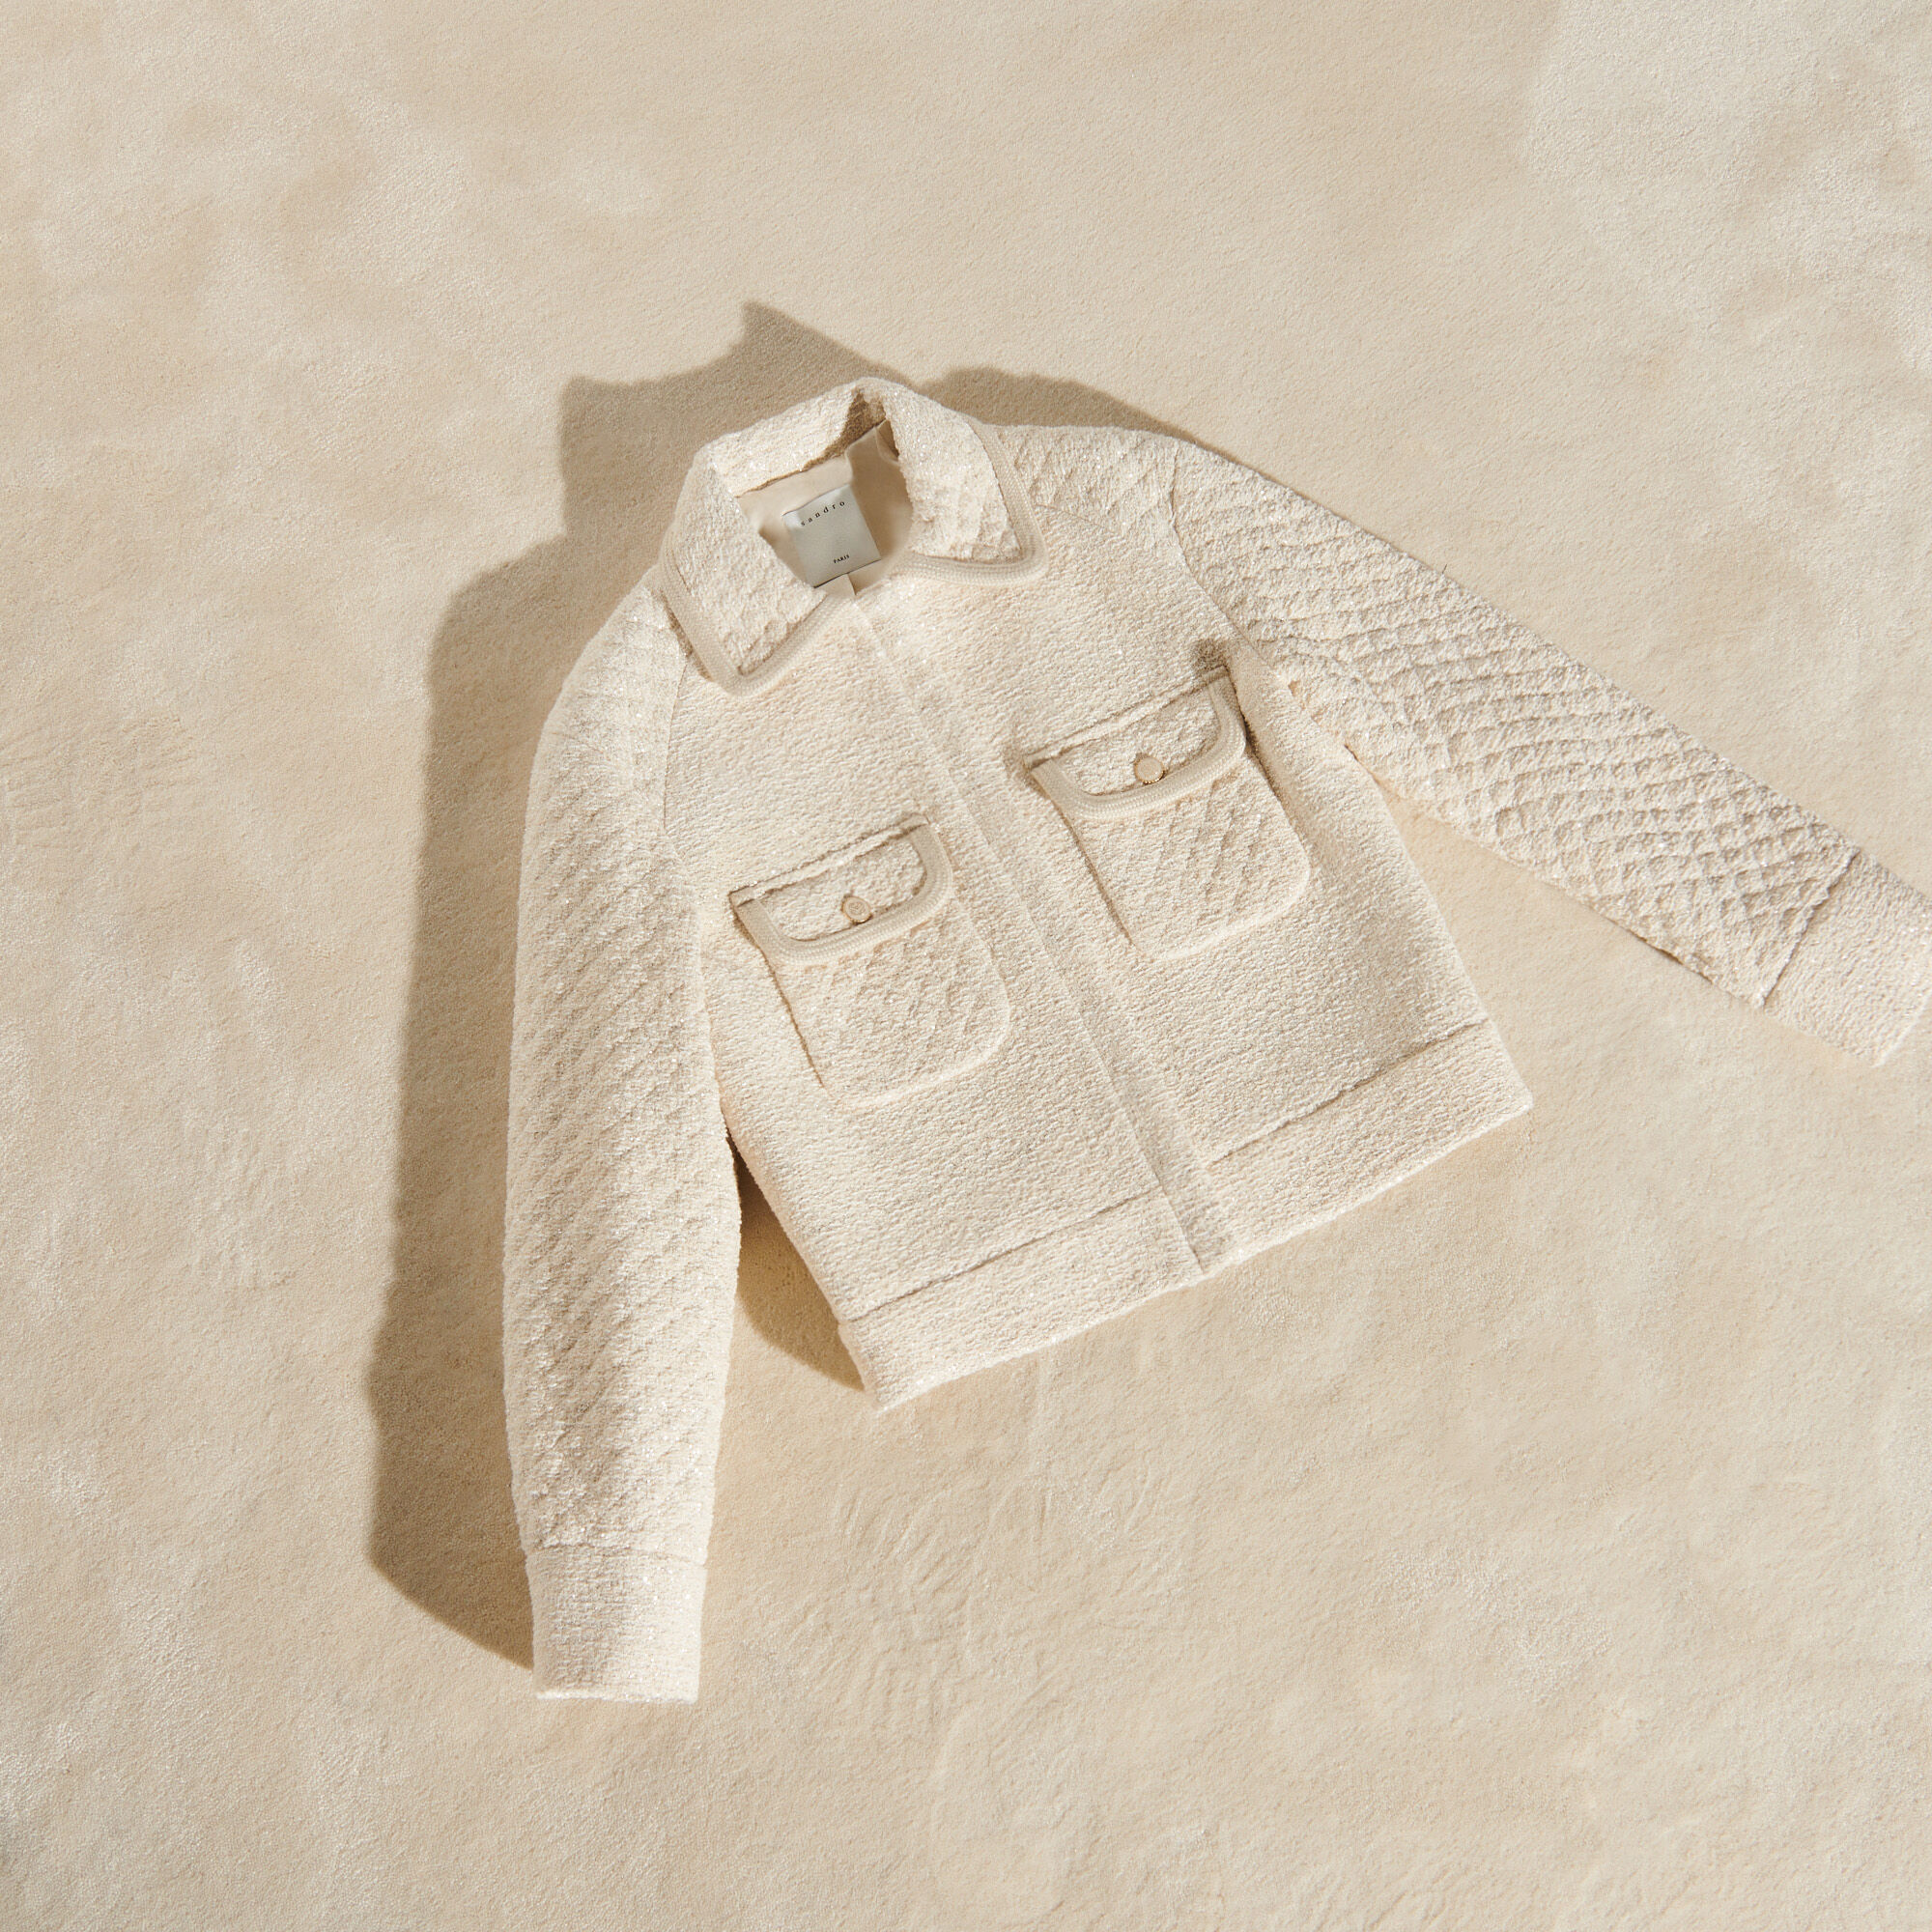 決算特価商品 Wool-Blend Jacket Tweed Fancy 毛皮/ファーコート